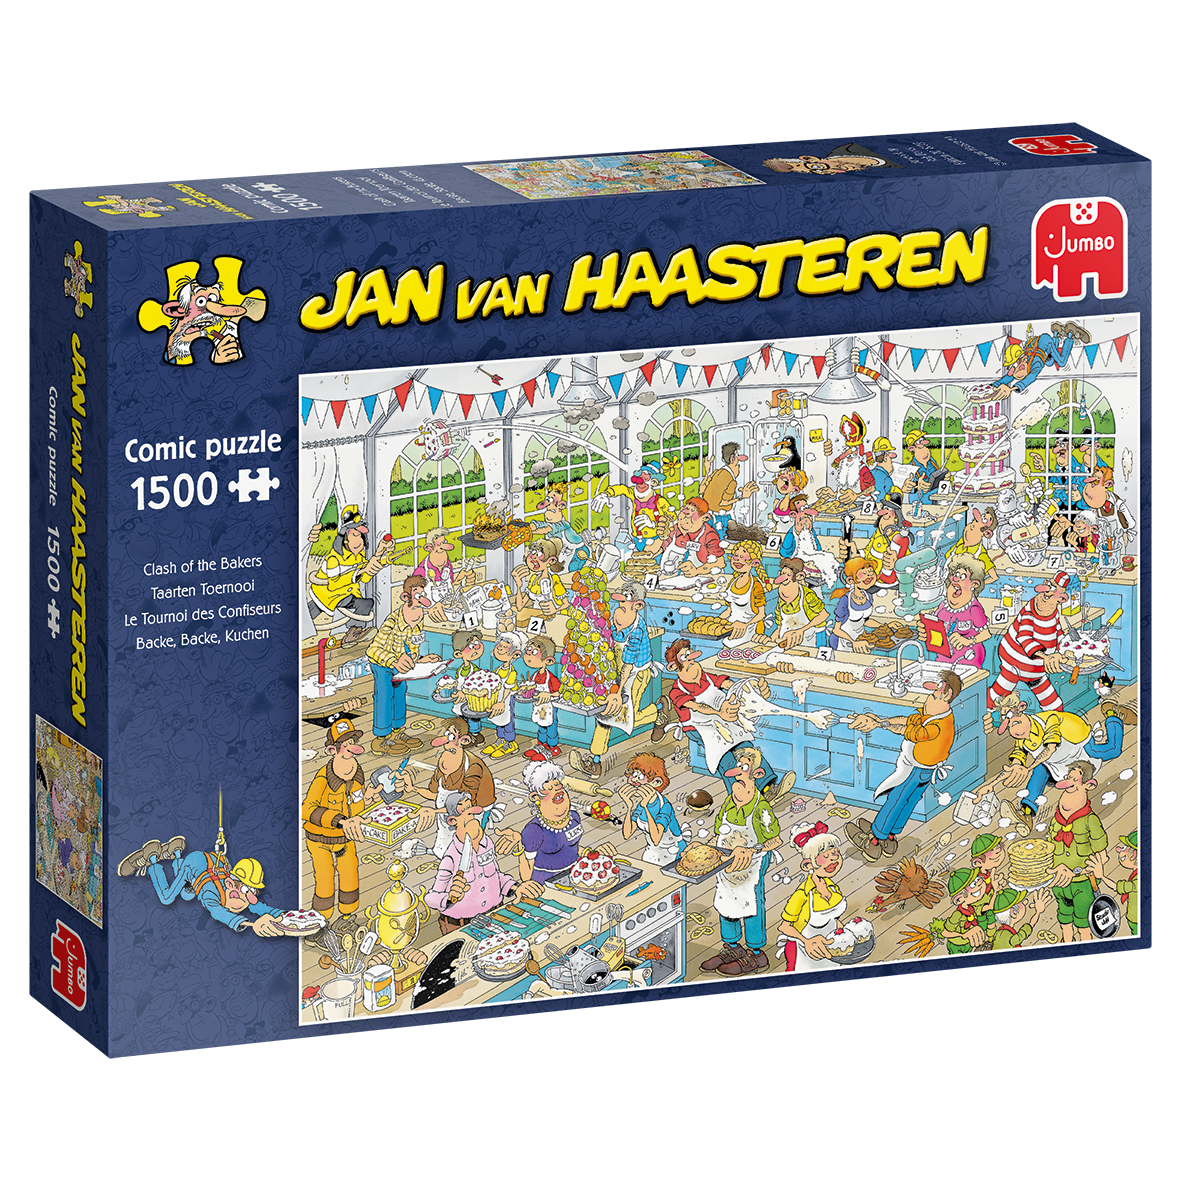 Jumbo Jan van Haasteren Clash of the Bakers 1500 pcs